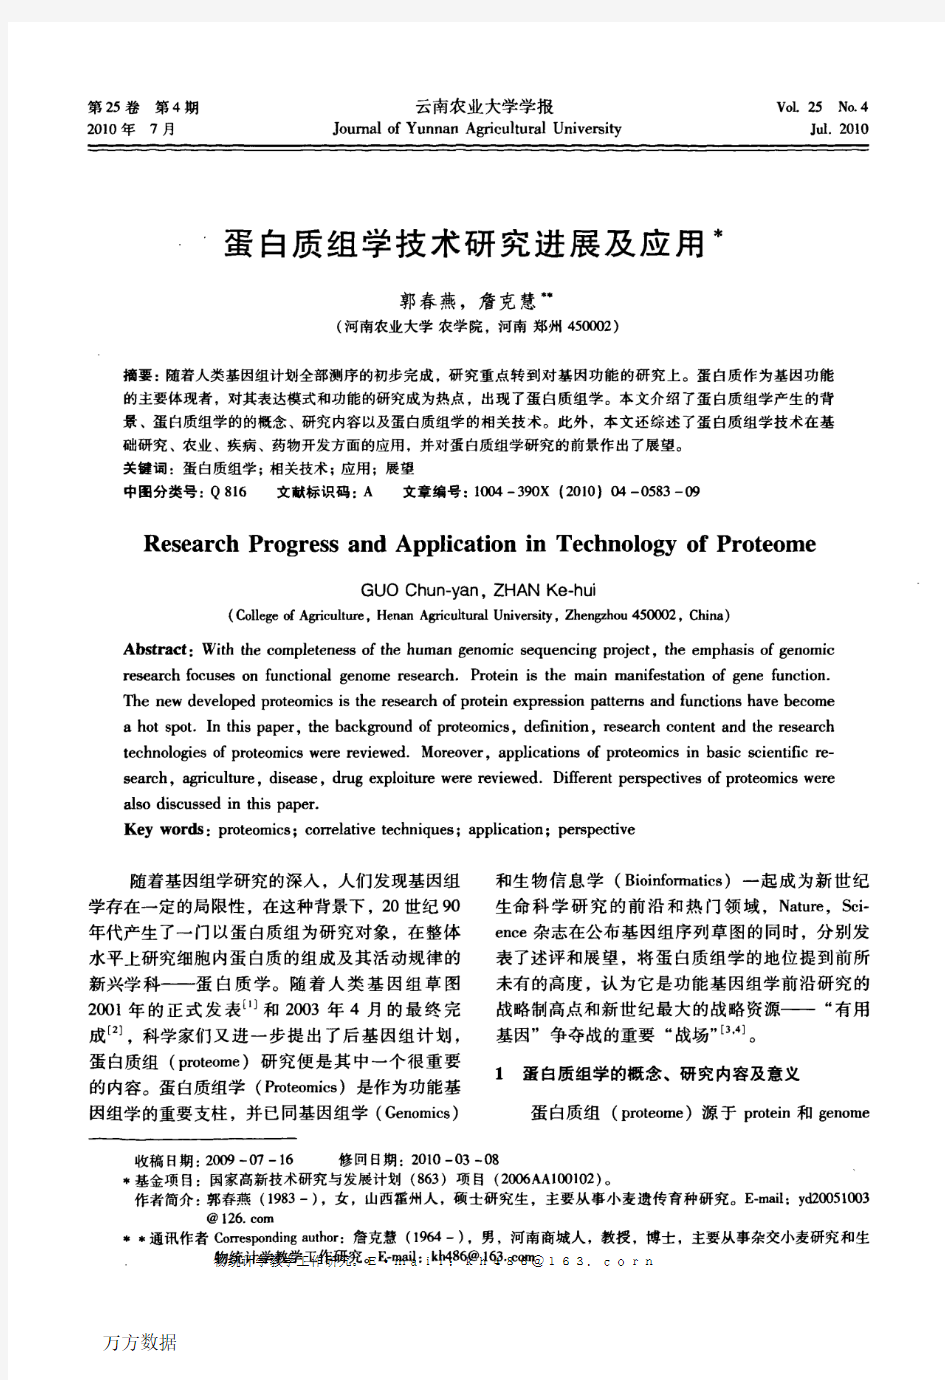 蛋白质组学技术研究进展及应用